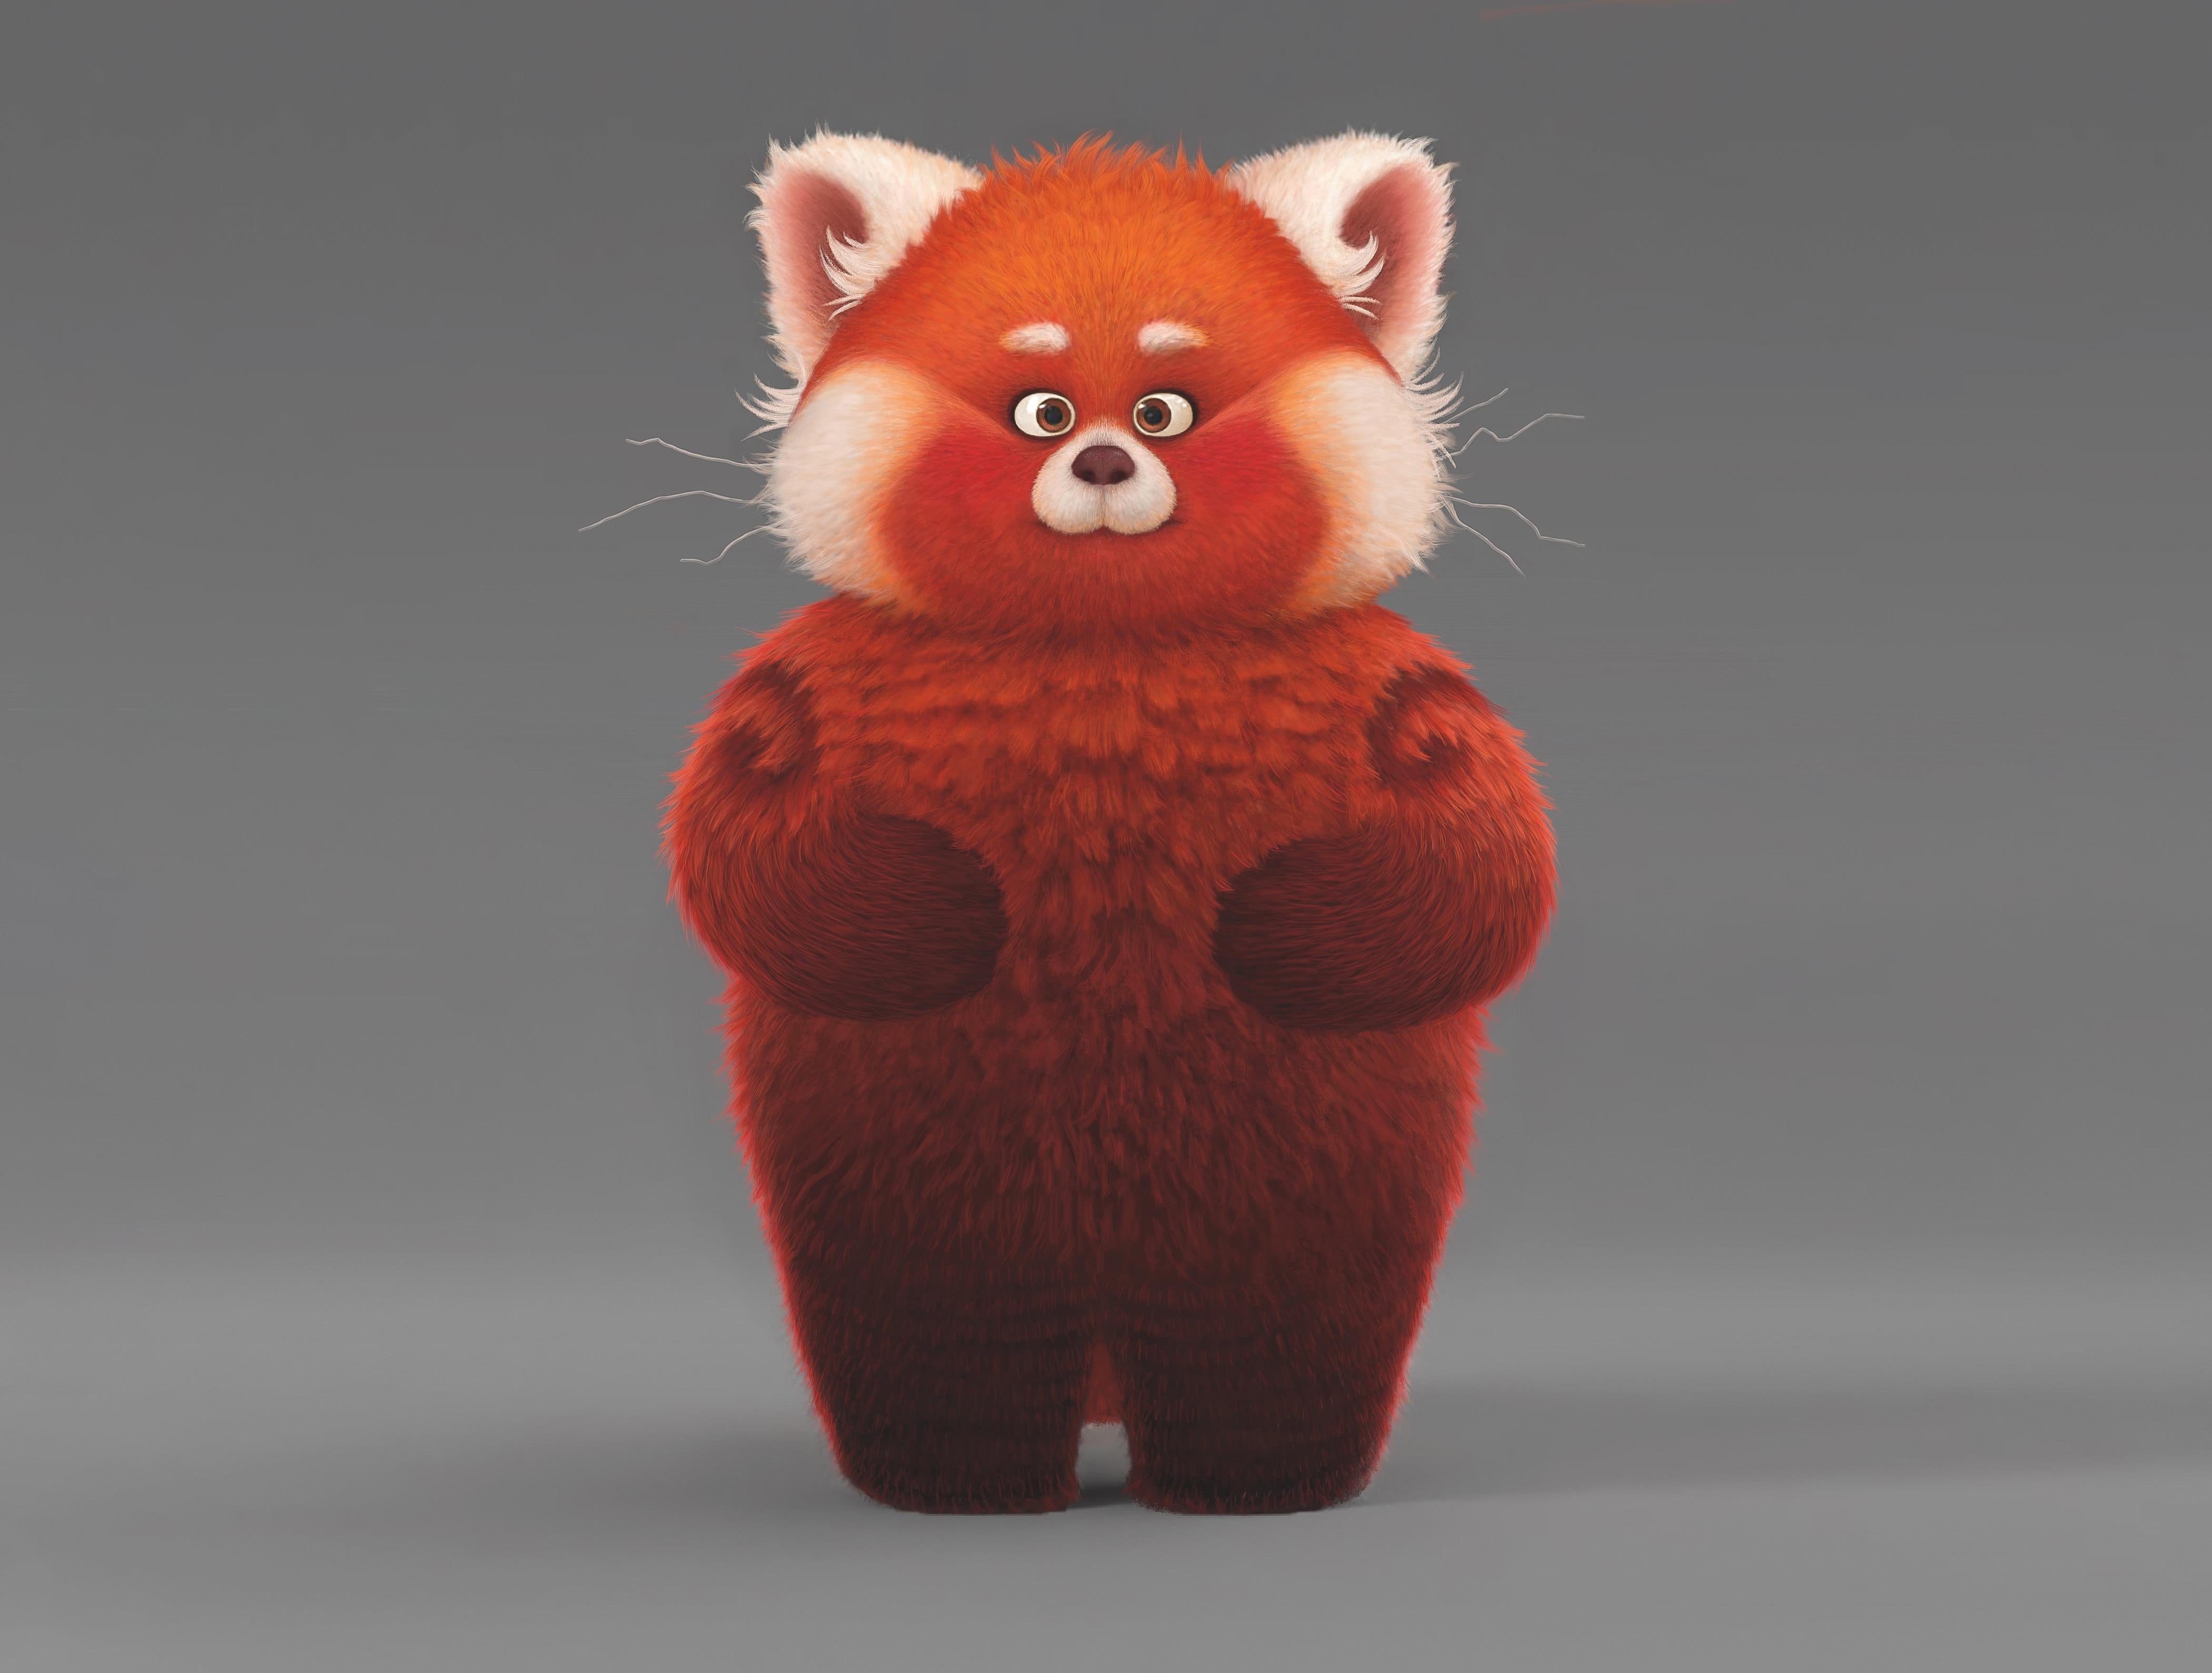 turning-red-red-panda.jpg